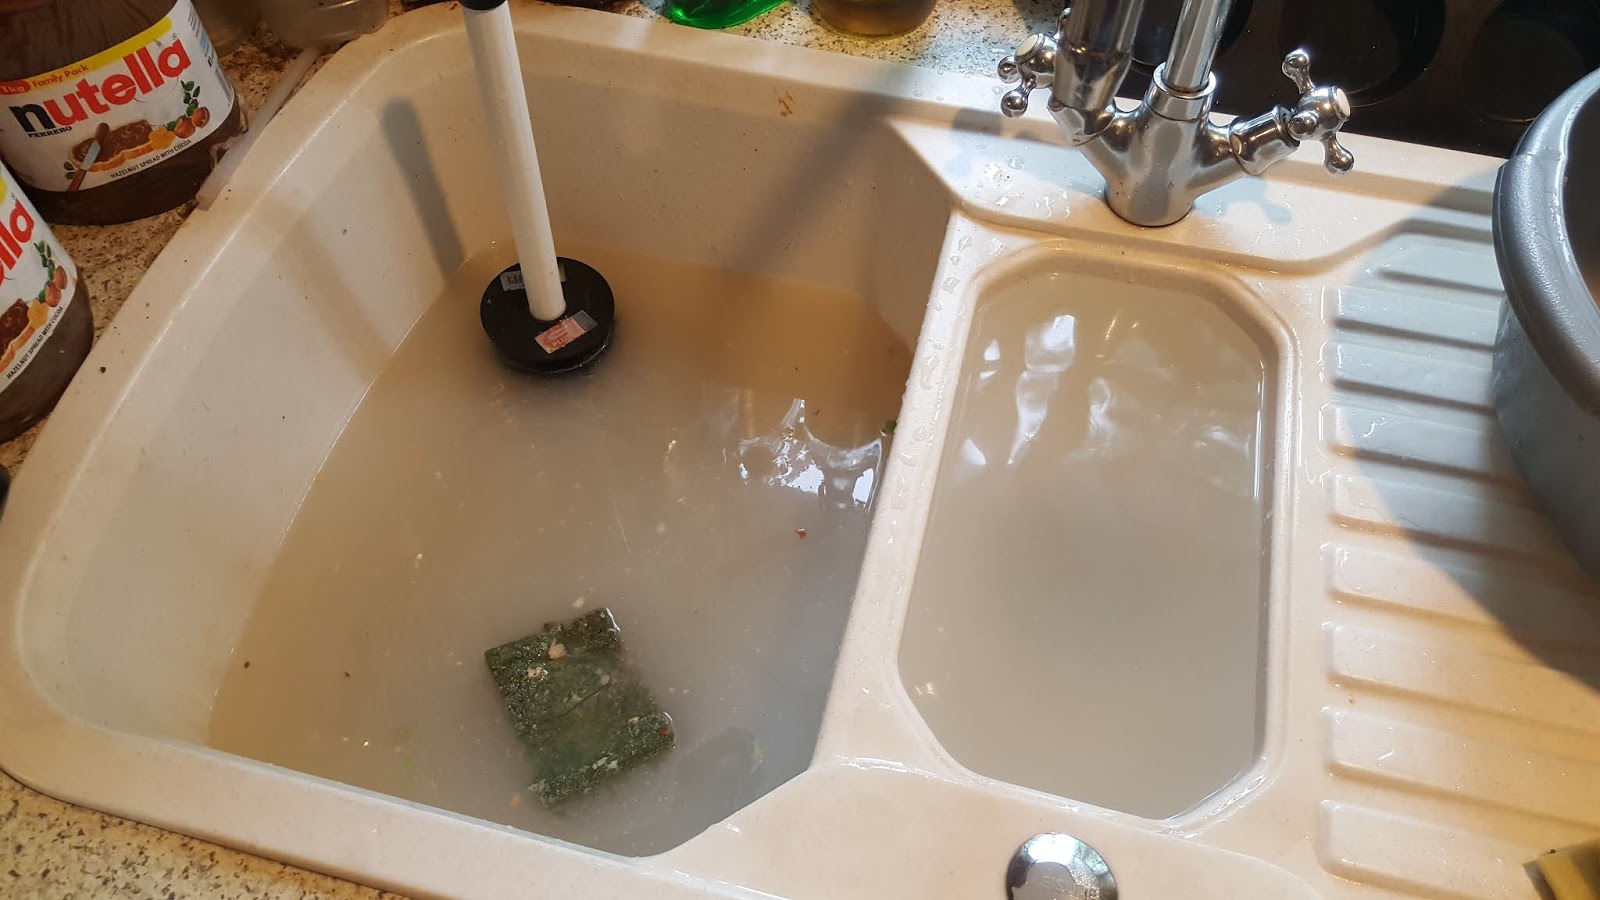 metamucil blocked kitchen sink